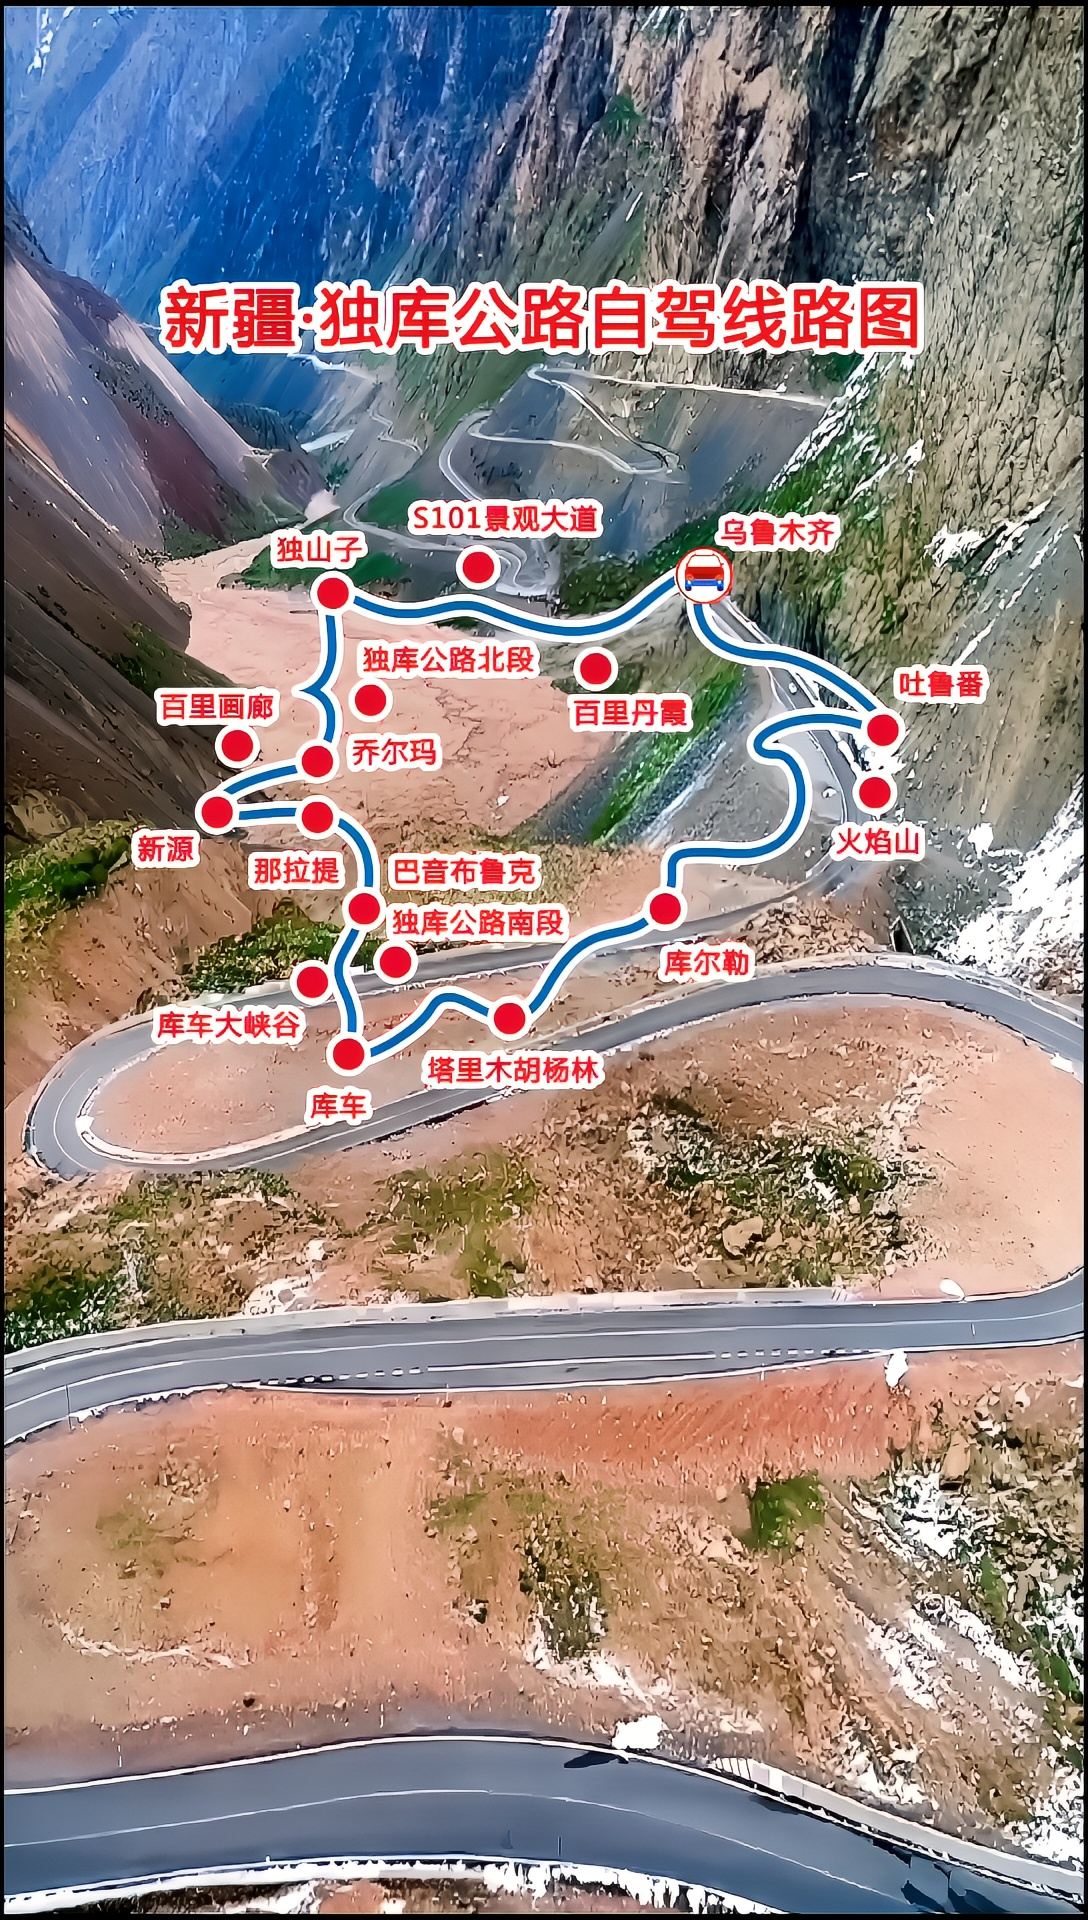 新疆独库公路自驾线路图，❤️游玩攻略线路，值得收藏关注！🔥